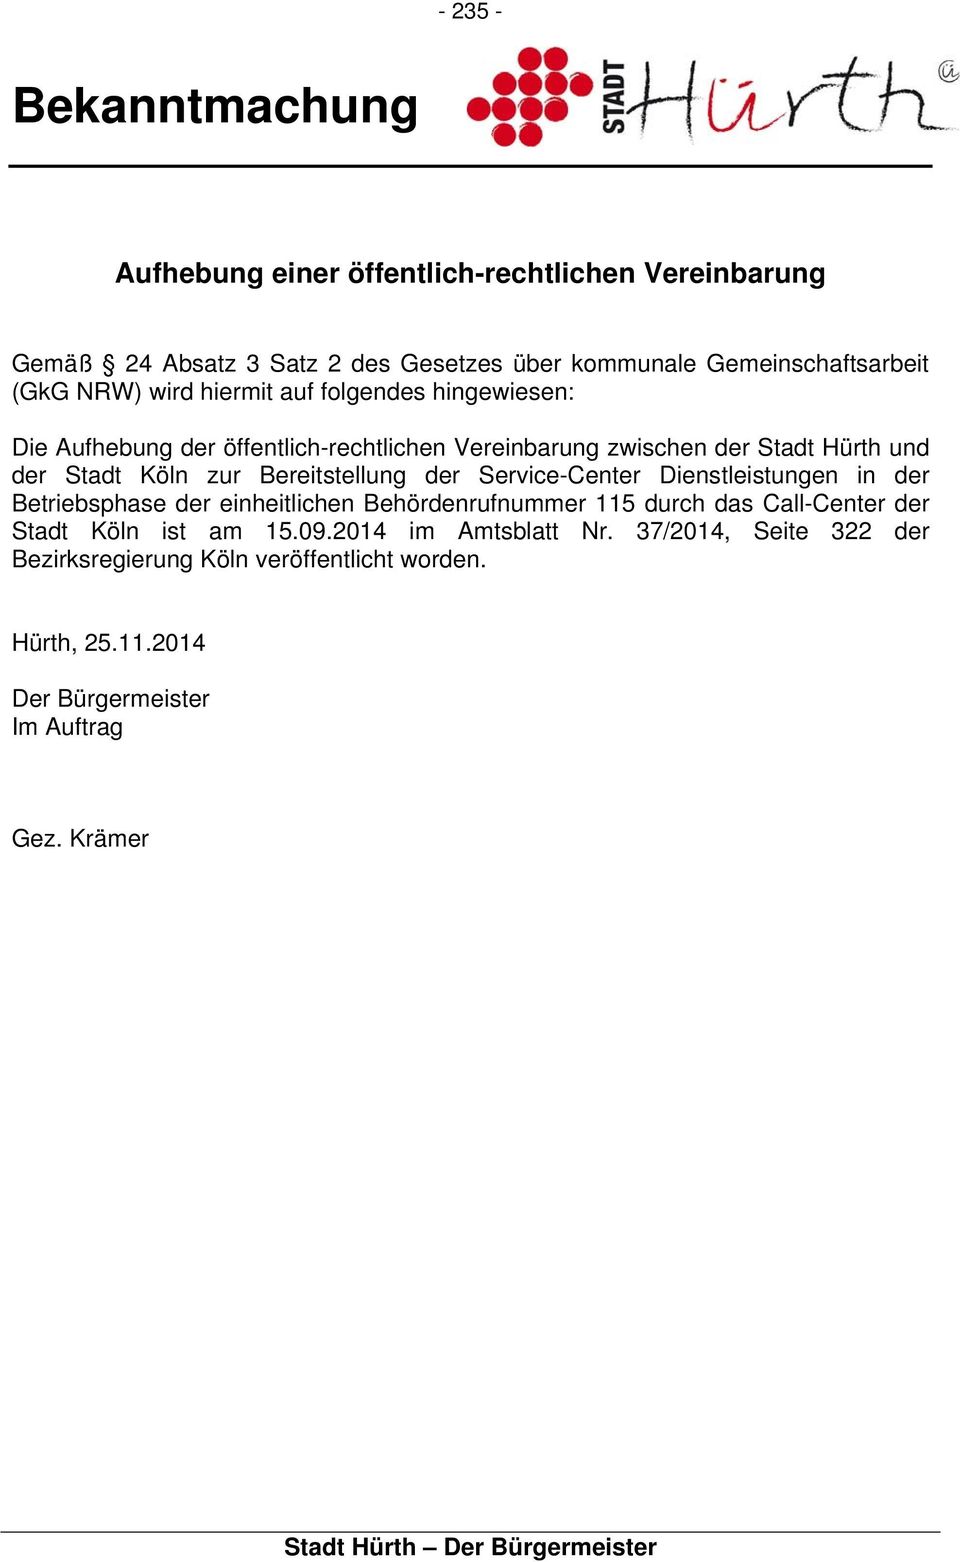 Bereitstellung der Service-Center Dienstleistungen in der Betriebsphase der einheitlichen Behördenrufnummer 115 durch das Call-Center der Stadt Köln ist